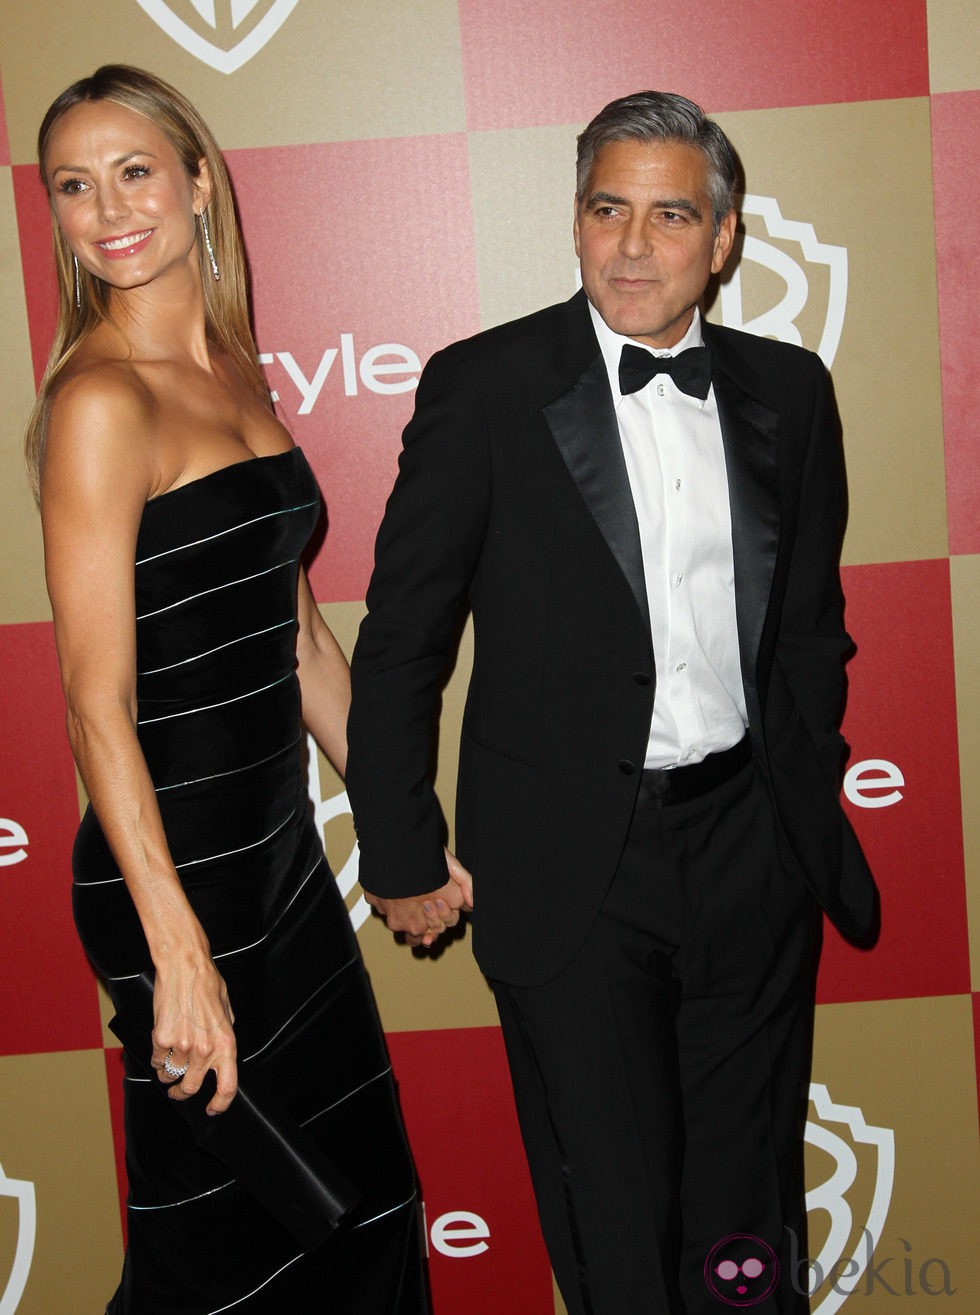 George Clooney y Stacy Keibler en la fiesta InStyle tras los Globos de Oro 2013